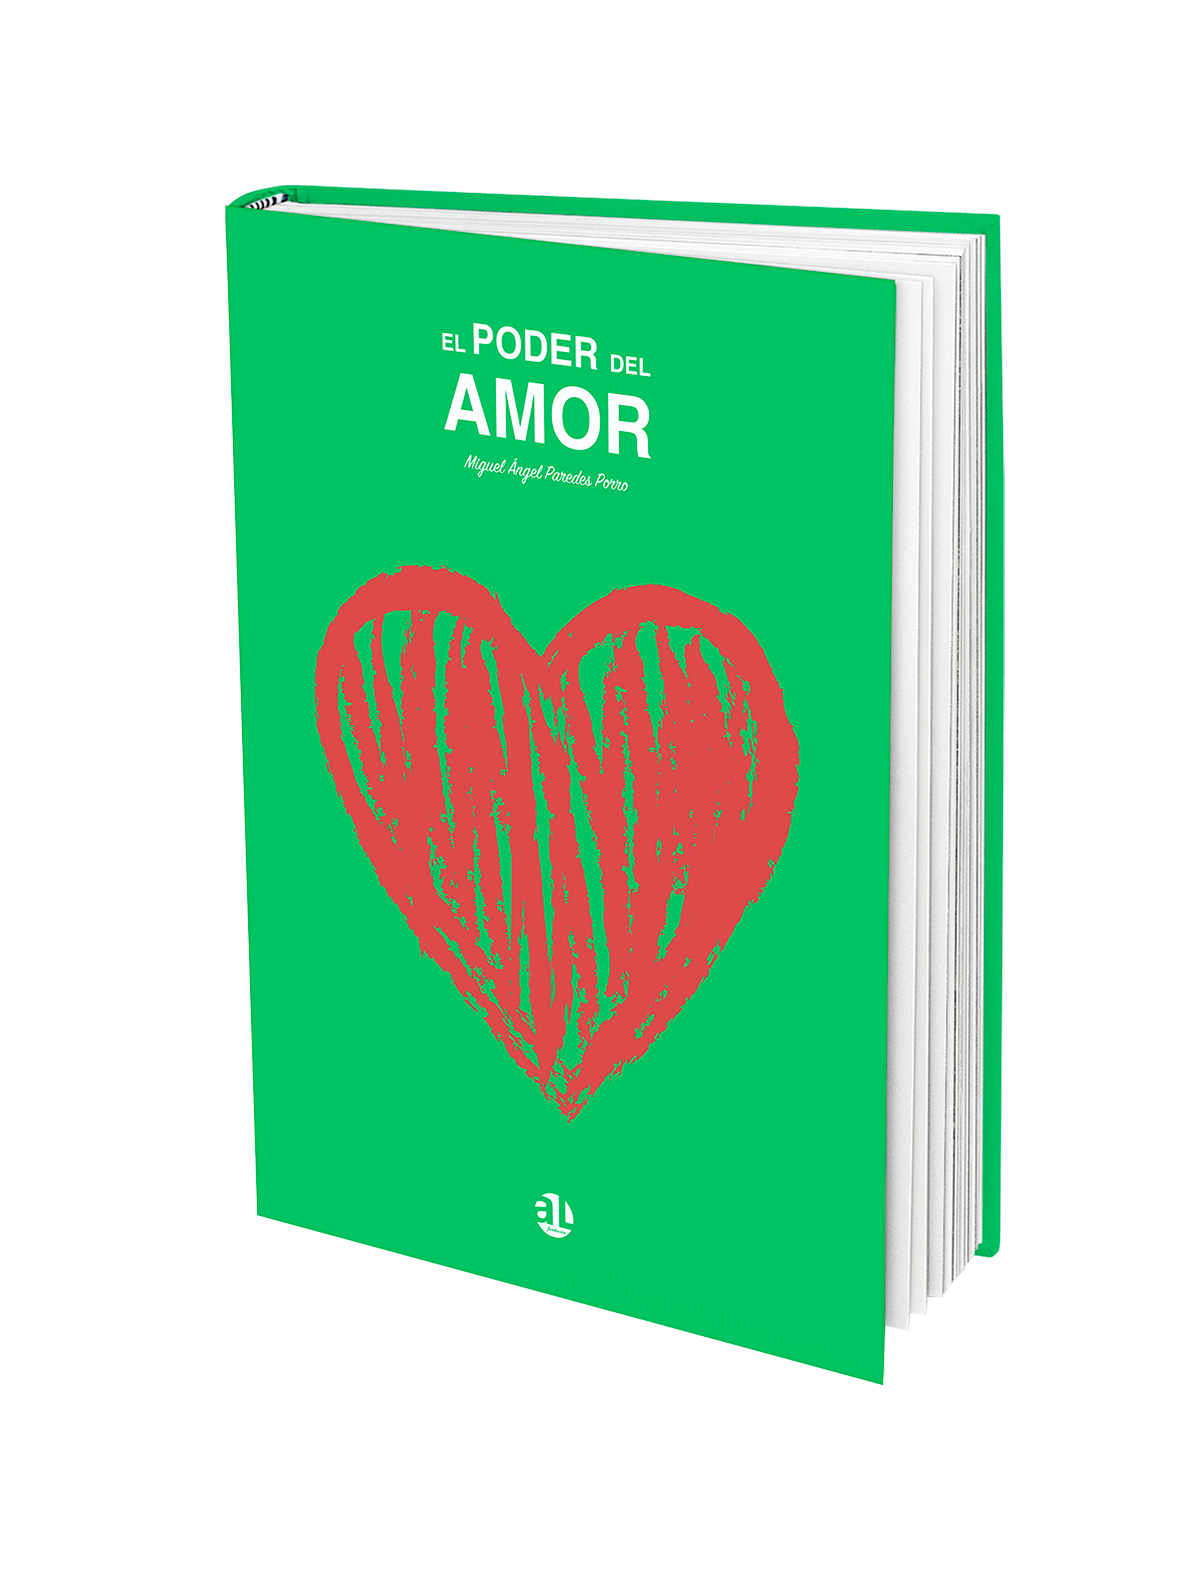 El poder del amor, Miguel Ángel Paredes Porro, AL Fundación, libro